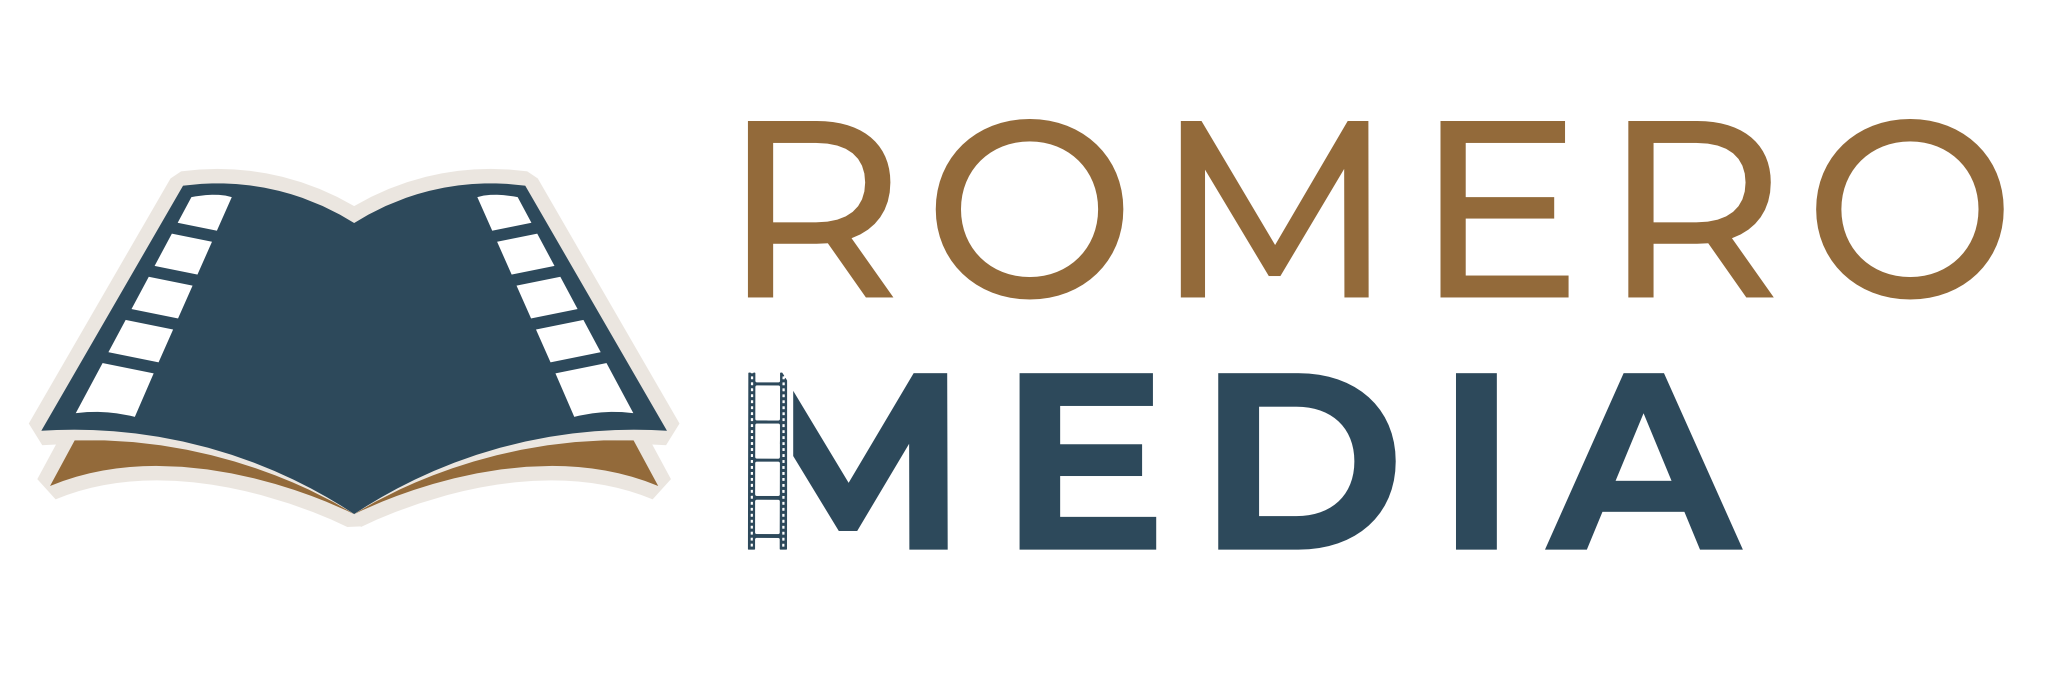 Romero Media LOGO